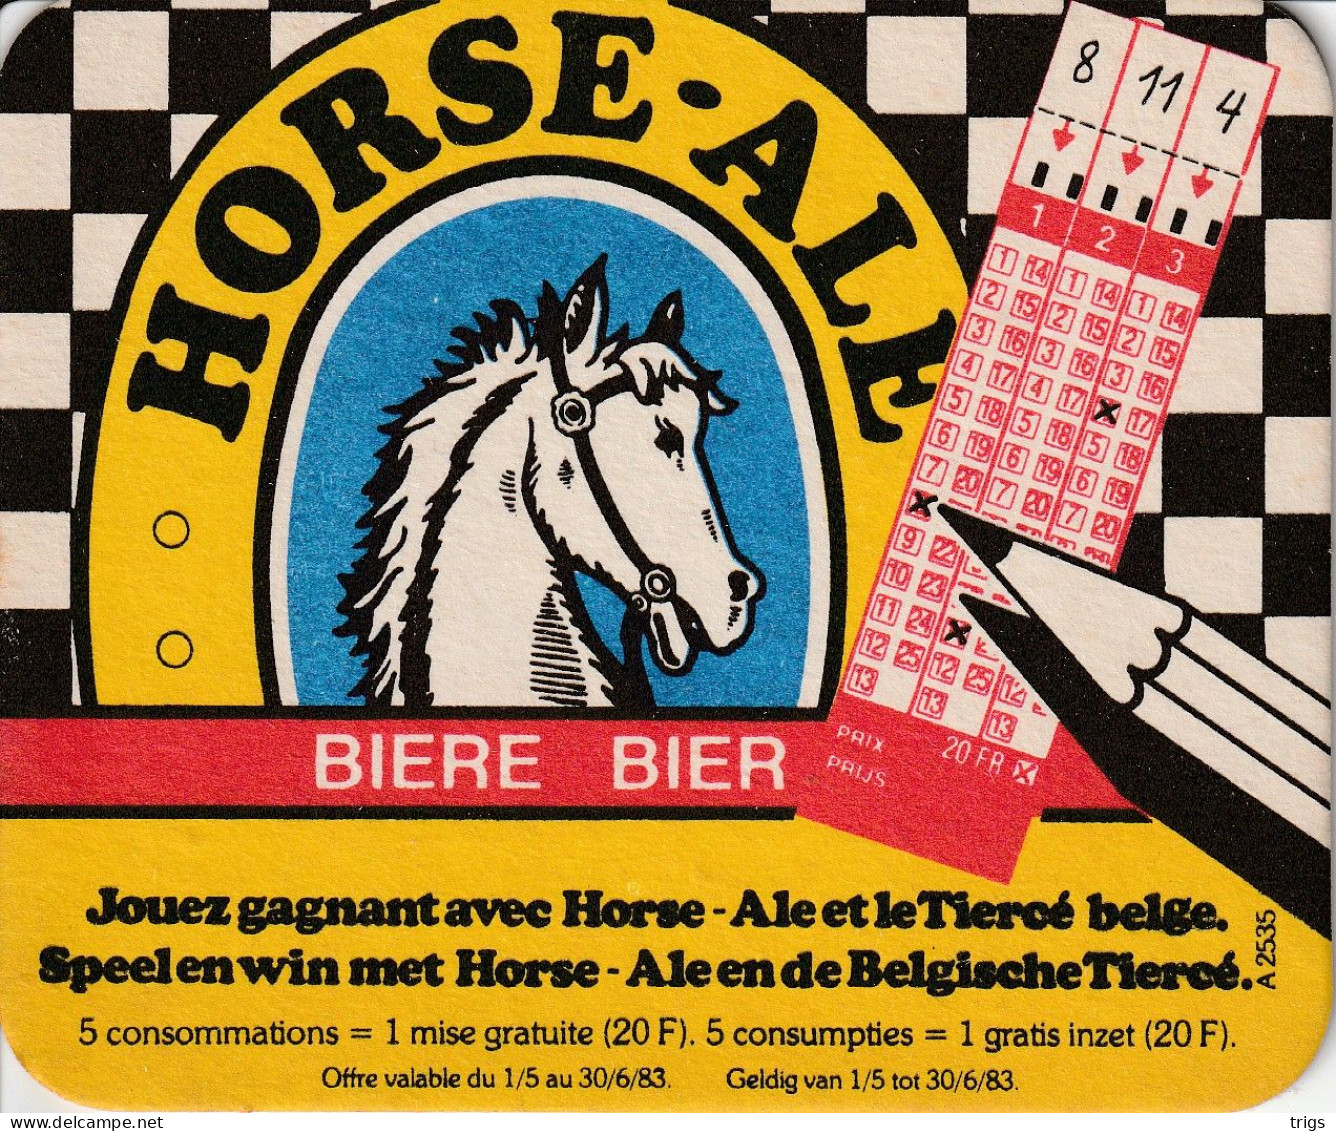 Horse Ale - Portavasos